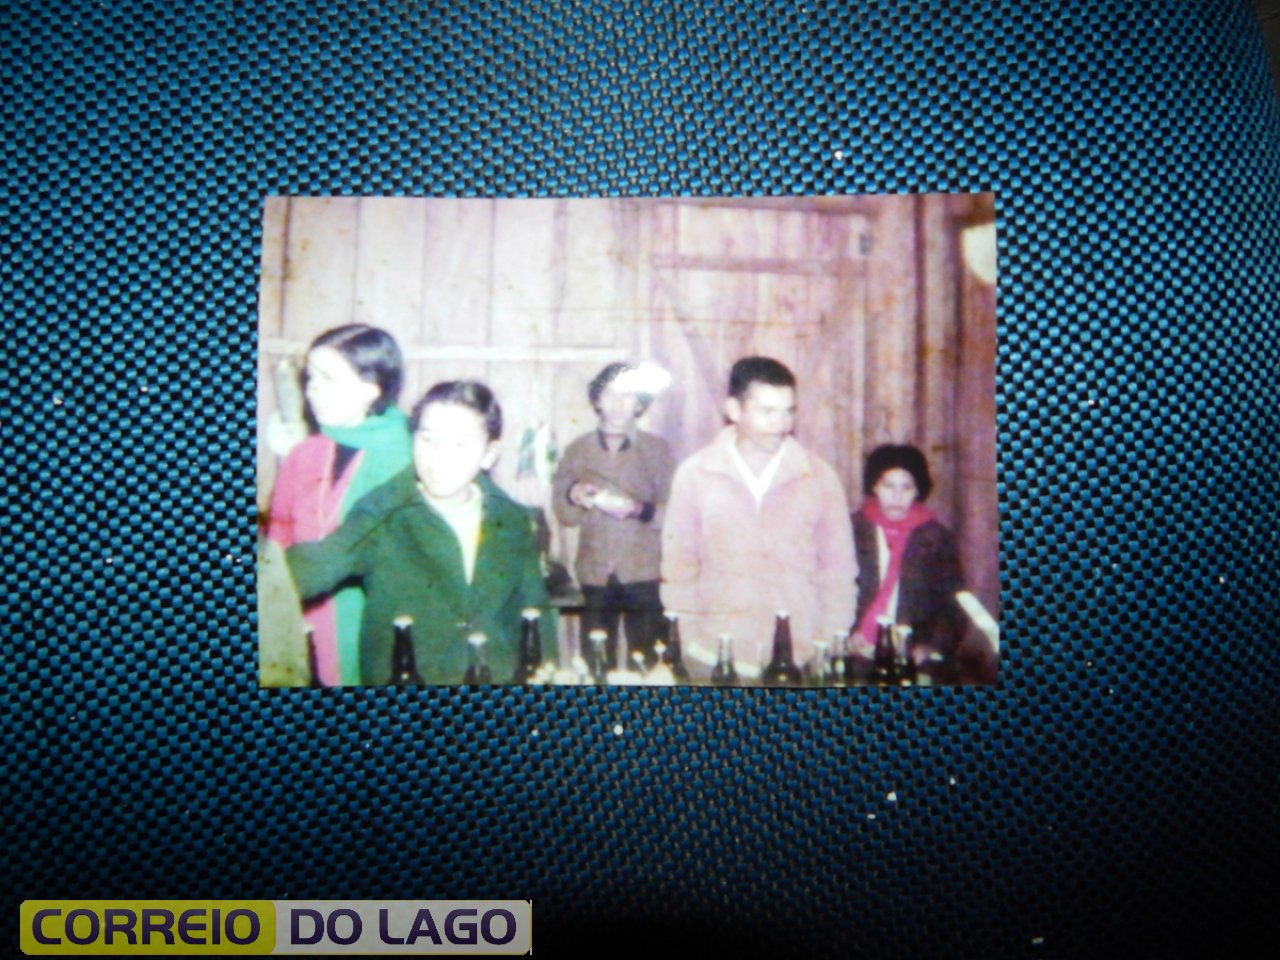 Festa de Casamento de Alzira e Lázaro. O Sr. da frente é Alcides R. Correia e a sua direita Maria Apª Correia. Vera Cruz do Oeste, 1974.